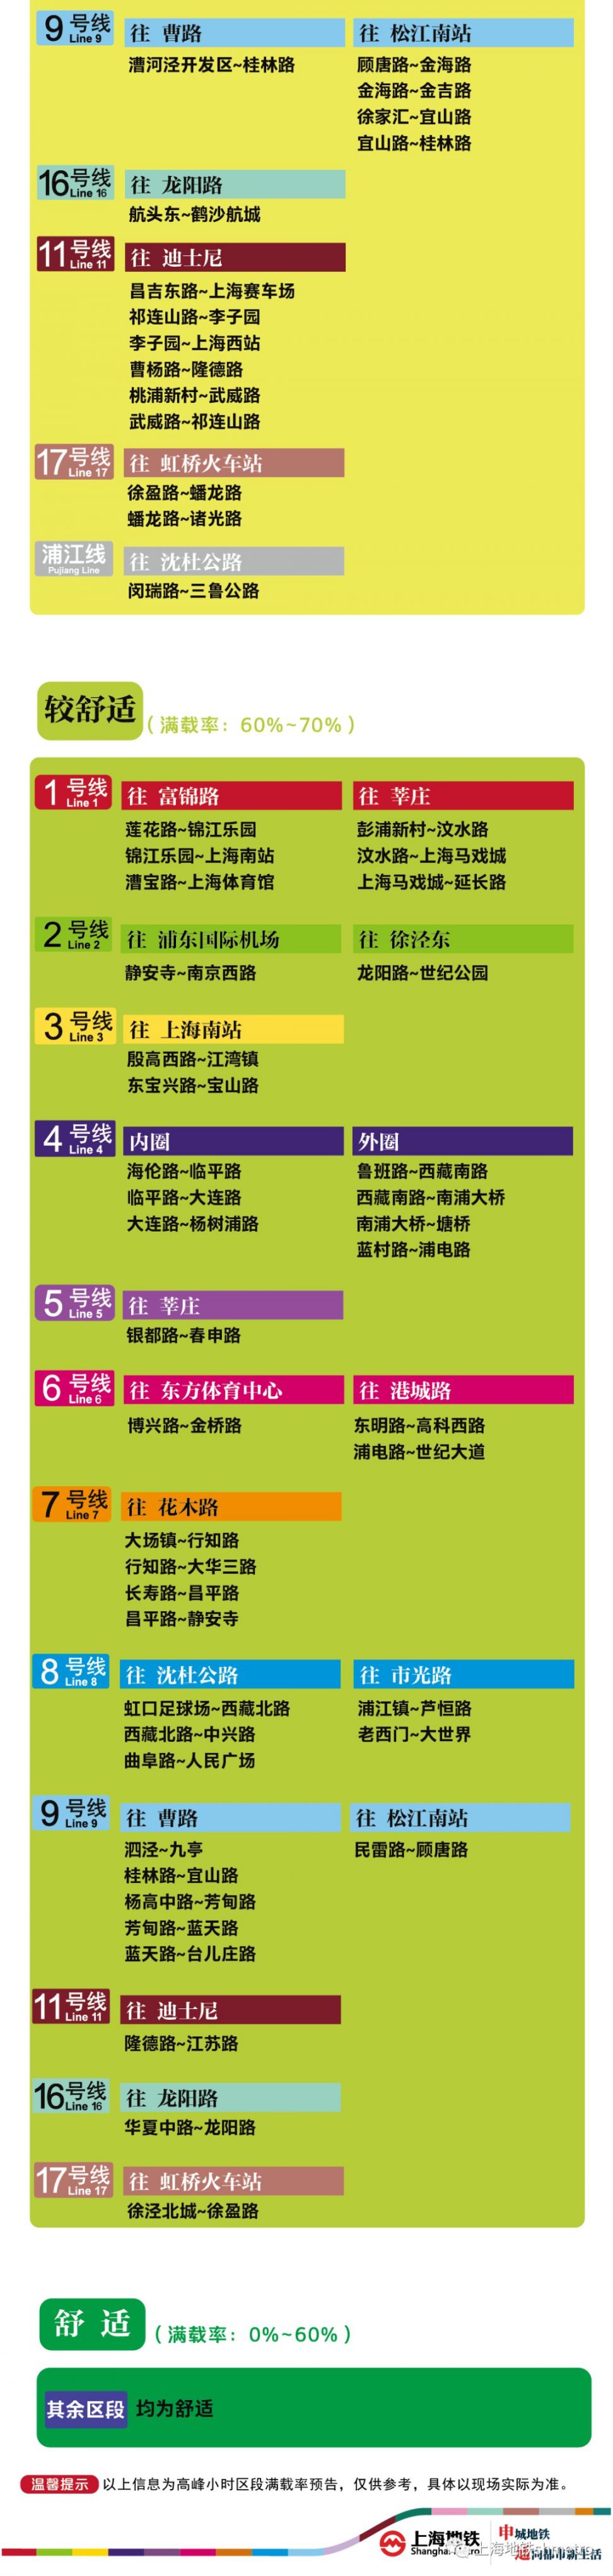 8月5日上海11座地铁站早高峰限流(附舒适度预告)